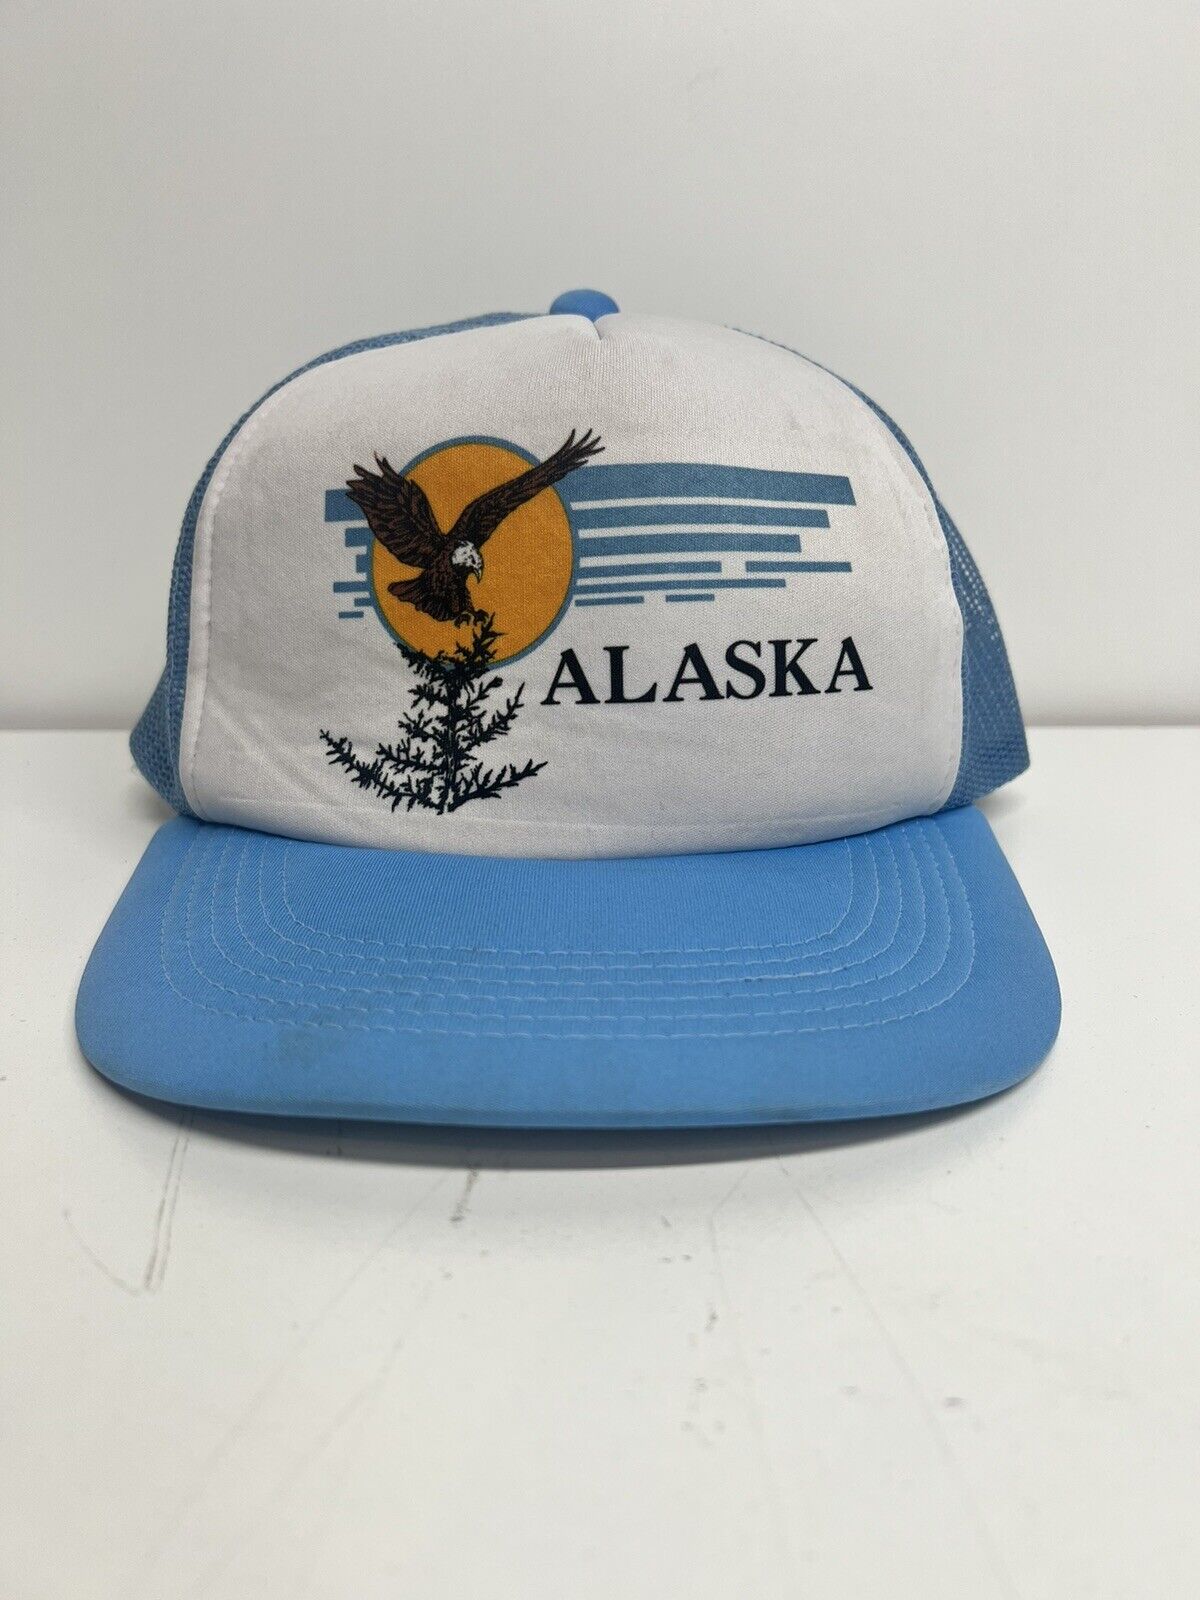 Vintage Alaska Mesh SnapBack Trucker Hat 